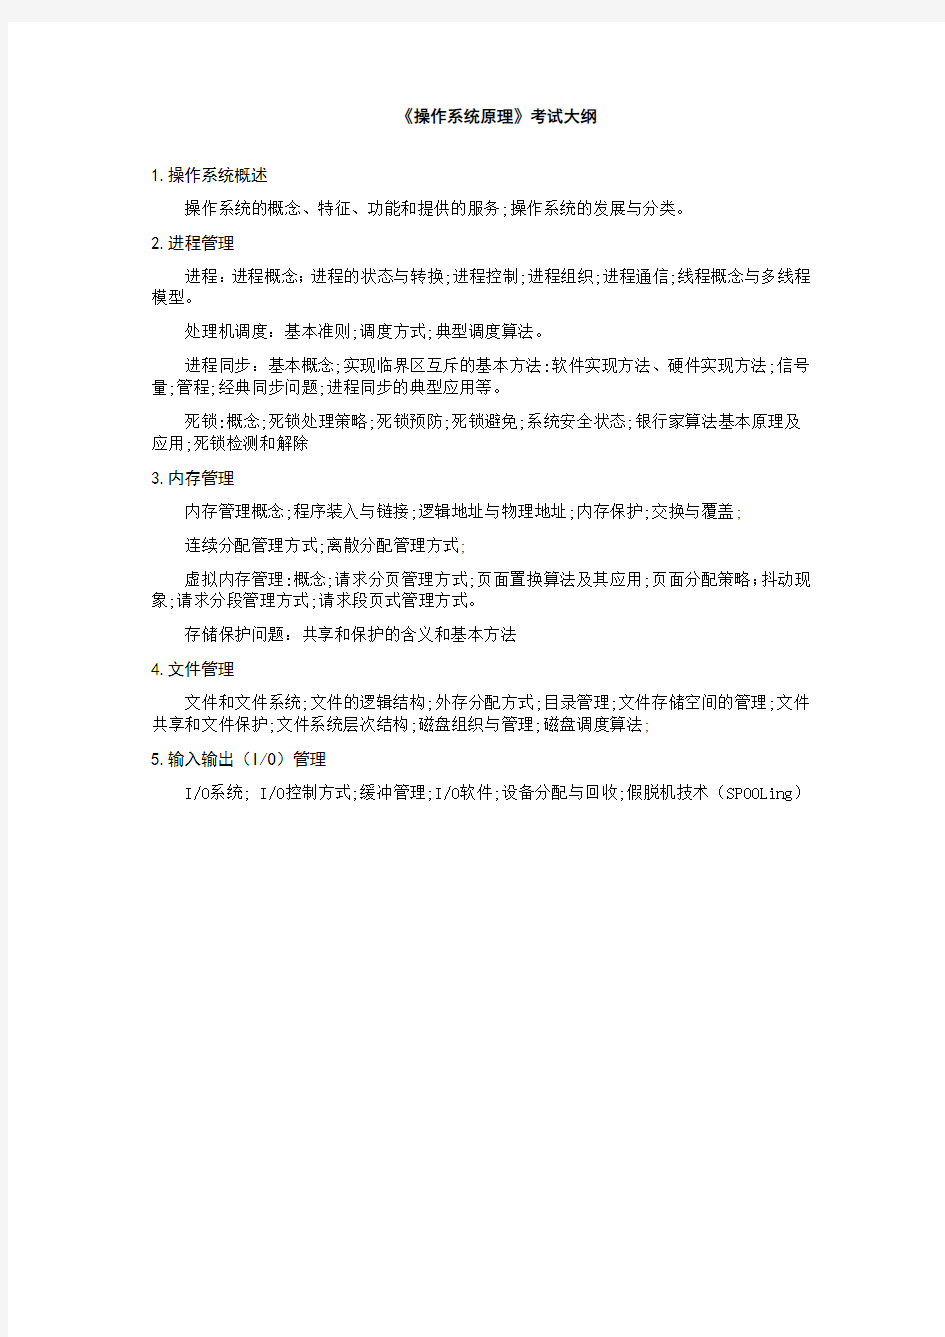 北京化工大学 综合三(计算机组成原理、操作系统)复试笔试大纲 硕士研究生考研入学复试大纲